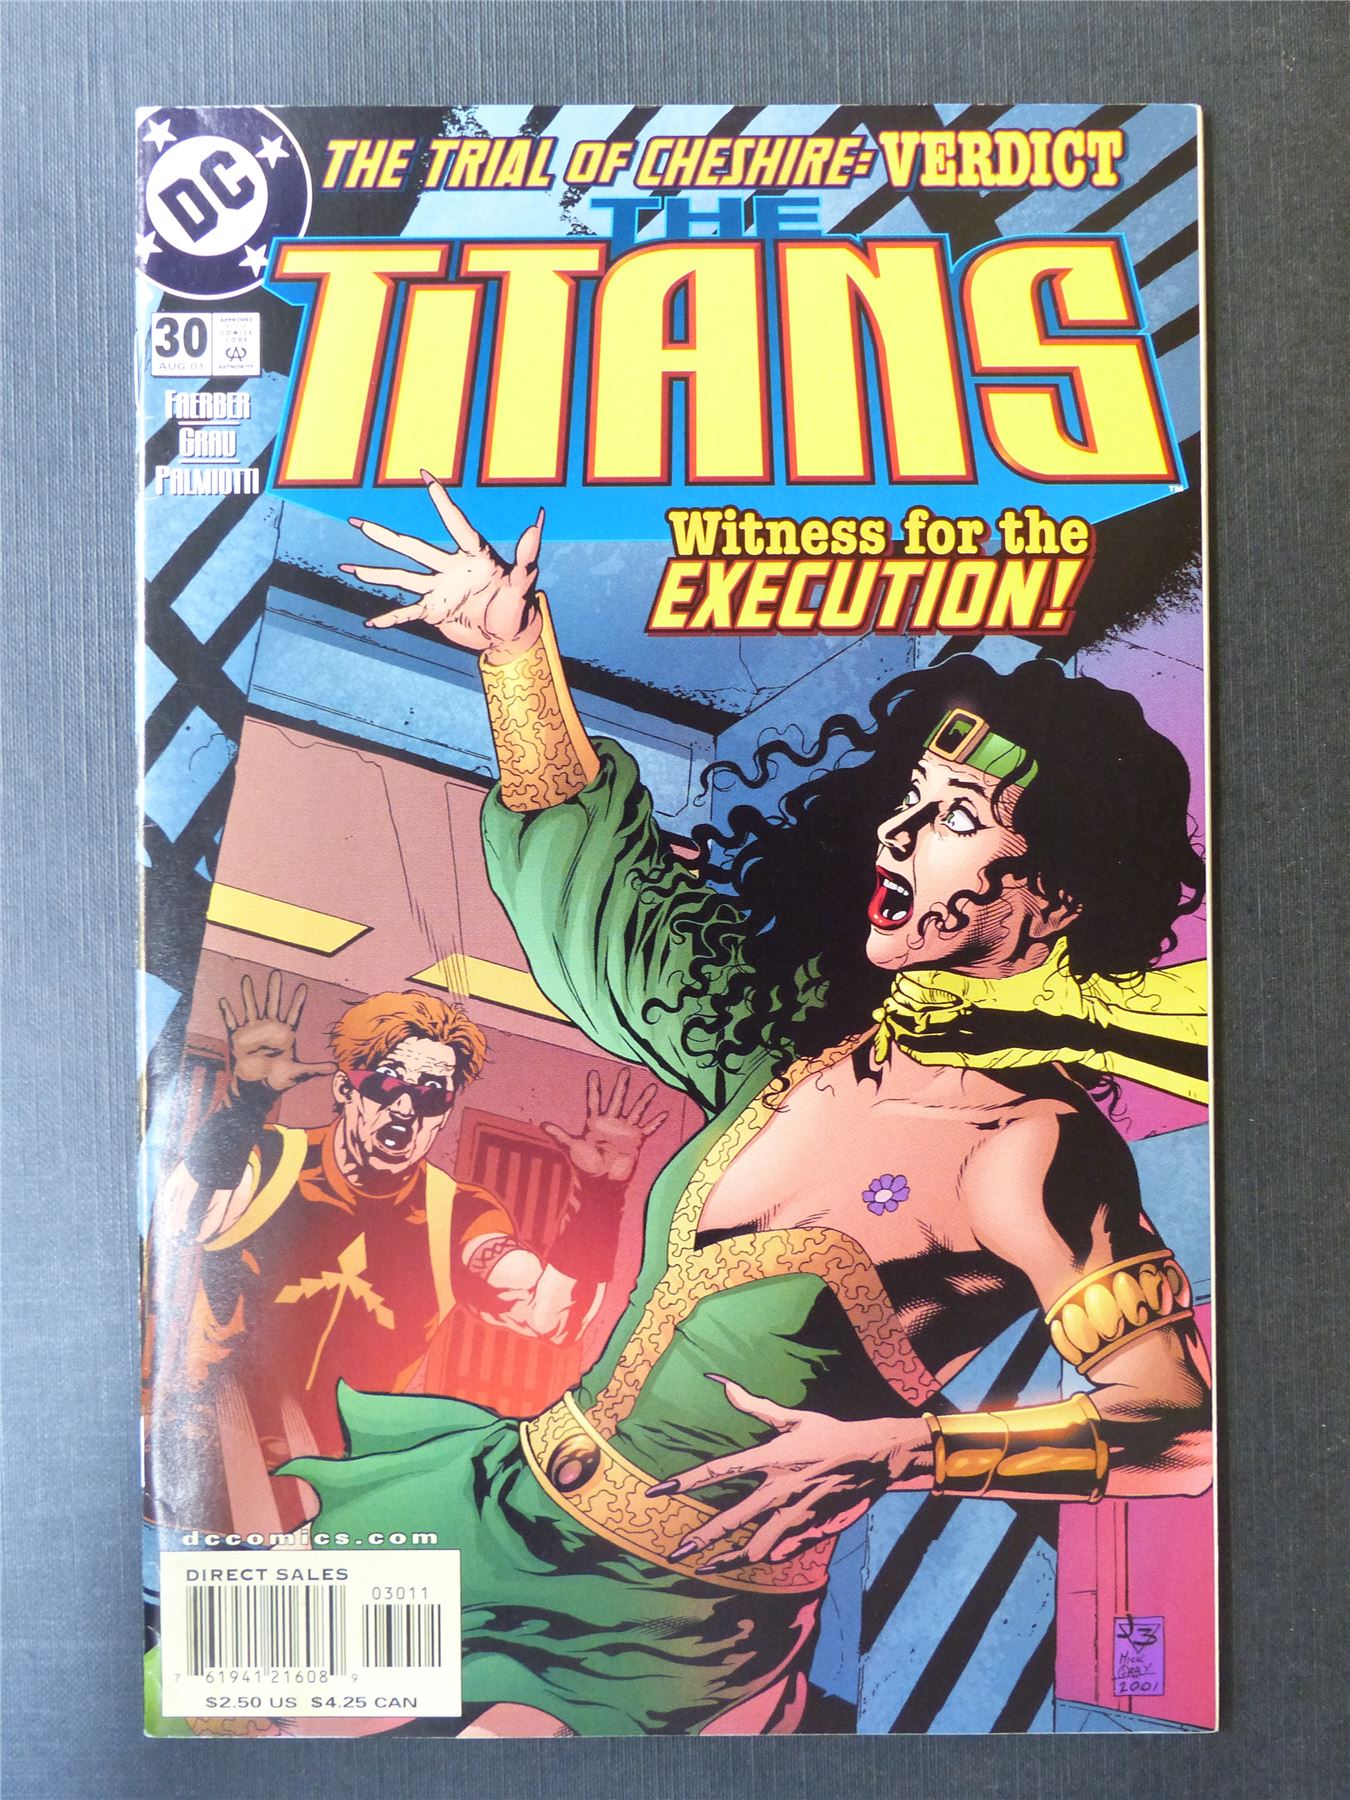 TITANS #30 - DC Comics #2JO